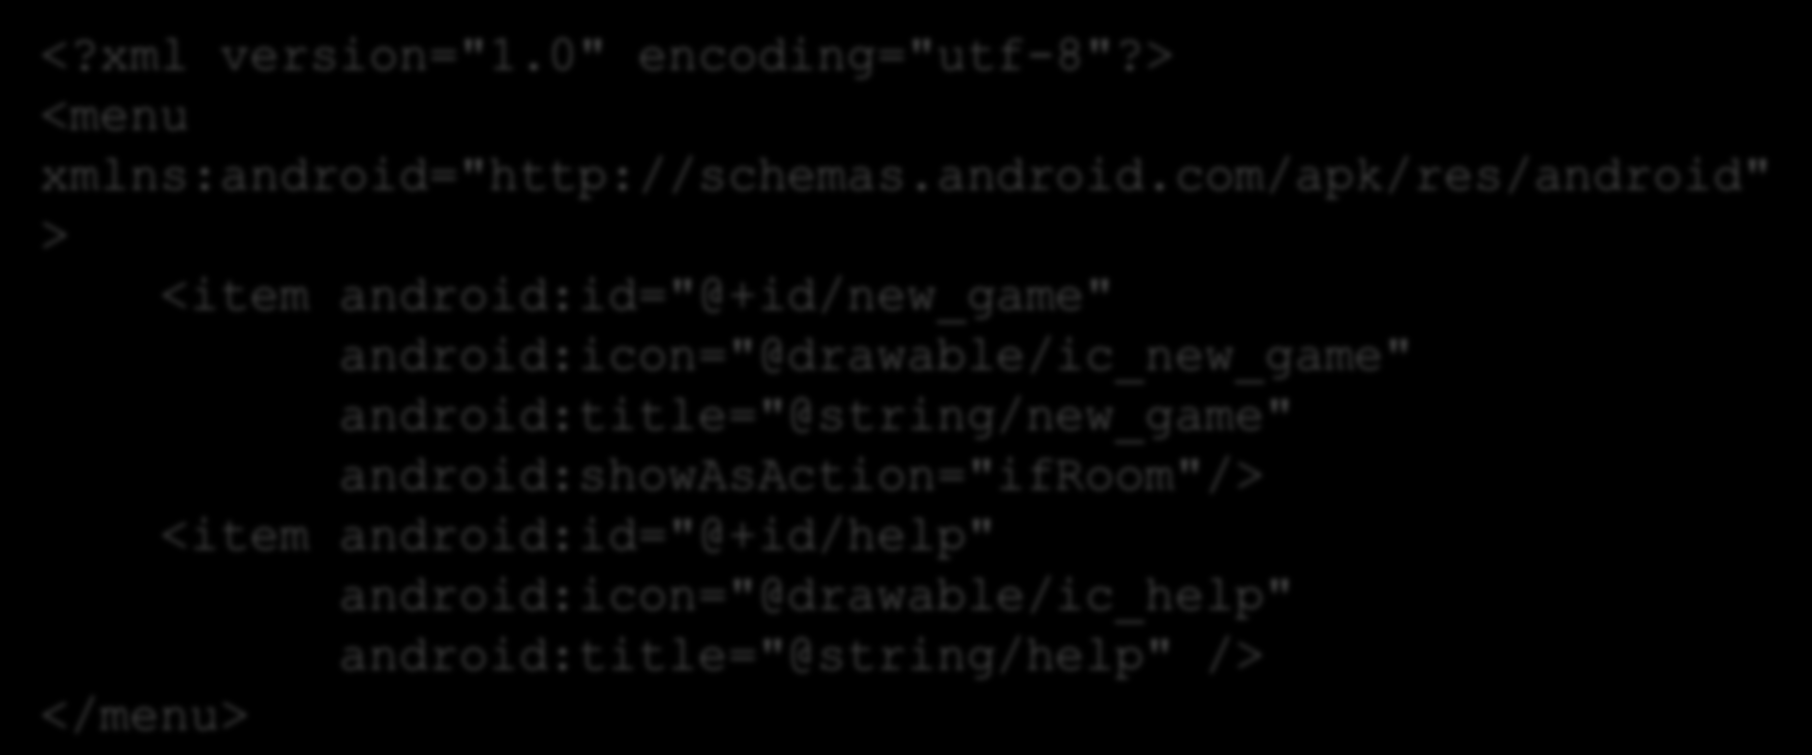 Menús A partir de la versión 3.0 (API level 11) los dispositivos Android no tienen por qué tener un botón menú Se añaden los ActionBars Los menús se definen primero en XML en res/menu: <?